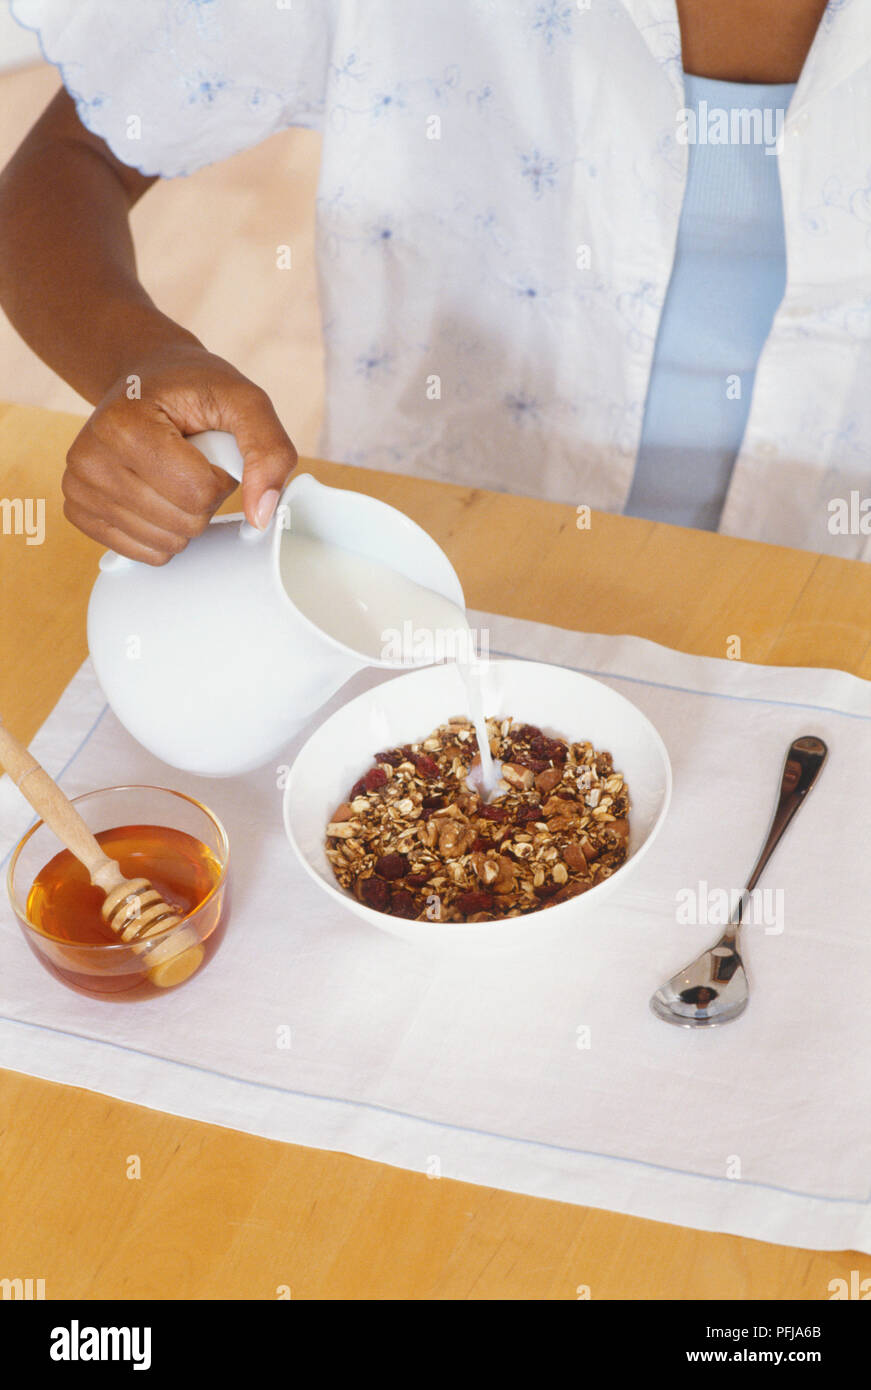 Gießen Milch von Kanne auf Müsli in der Schüssel, daneben eine Schale mit Honig und einem Löffel heraus auf weißer Unterlage gelegt Stockfoto